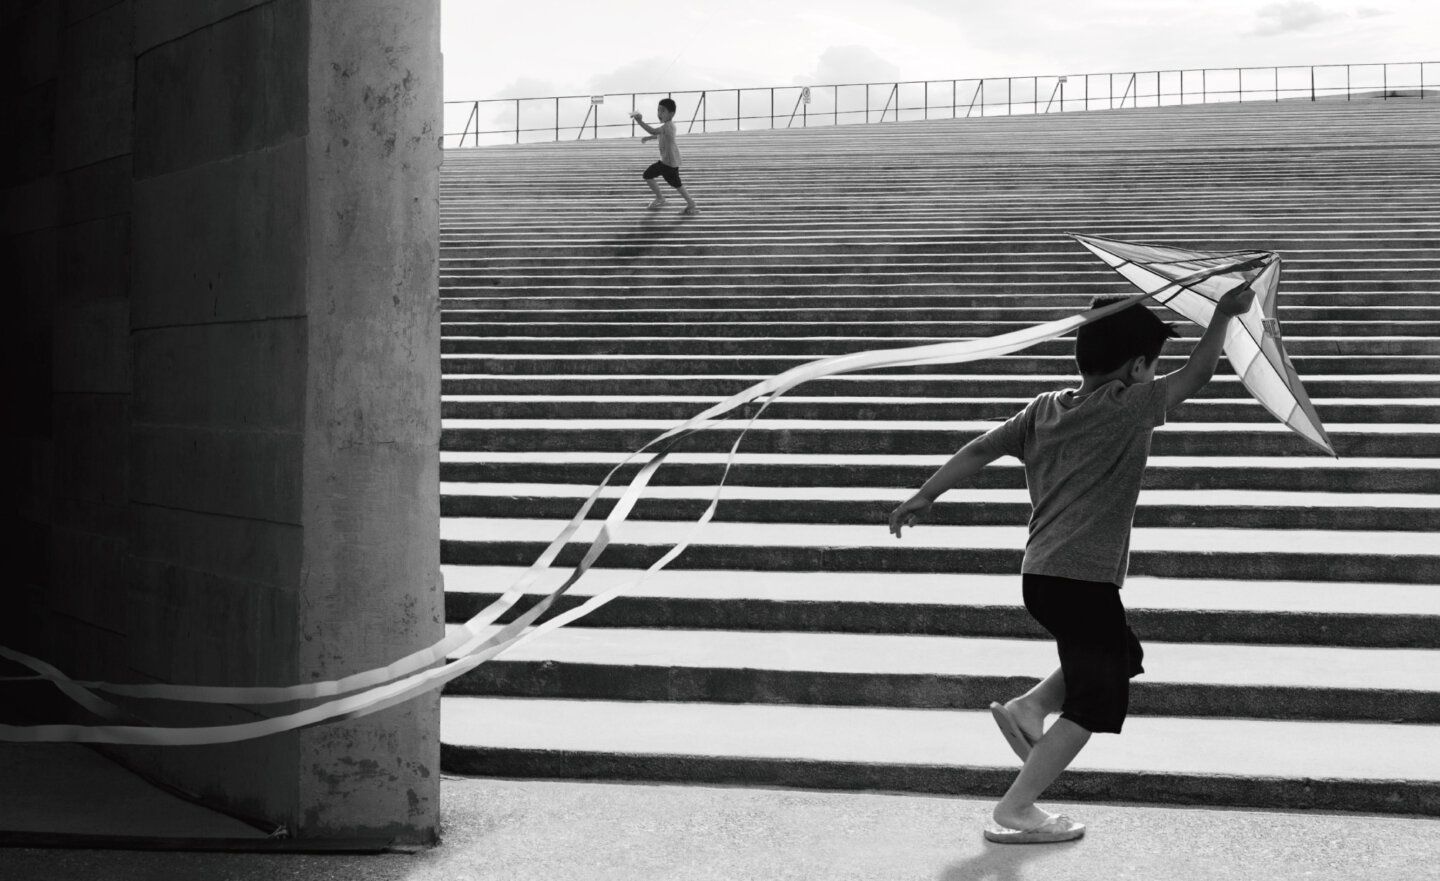 GCCA 攝影比賽揭曉，「小男孩在水泥樓梯放風箏照片」獲獎